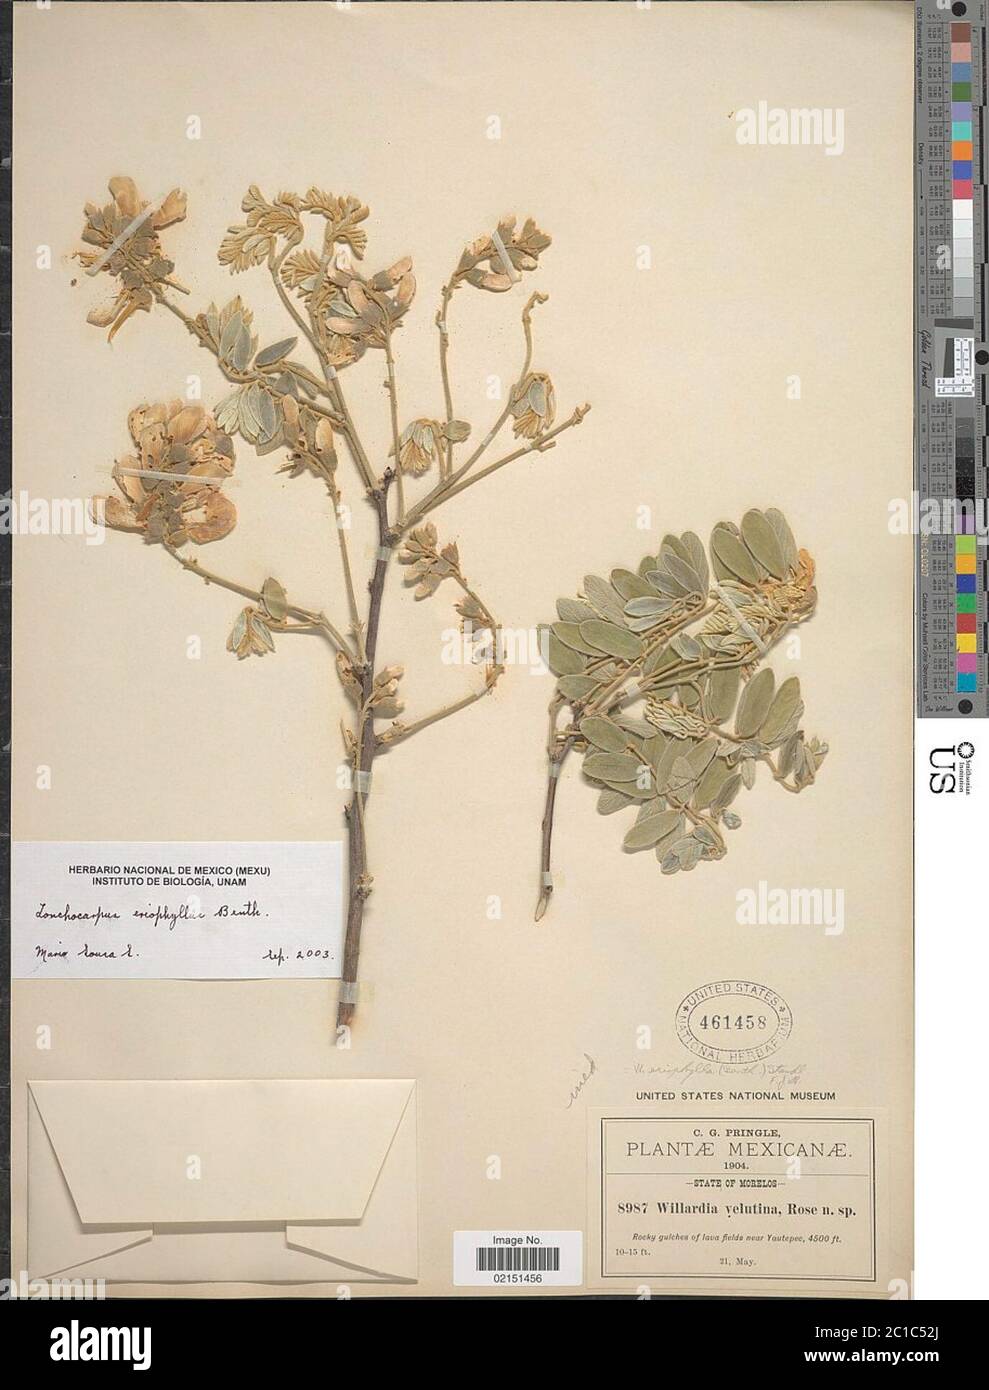 Lonchocarpus eriophyllus Benth Lonchocarpus eriophyllus Benth. Stock Photo